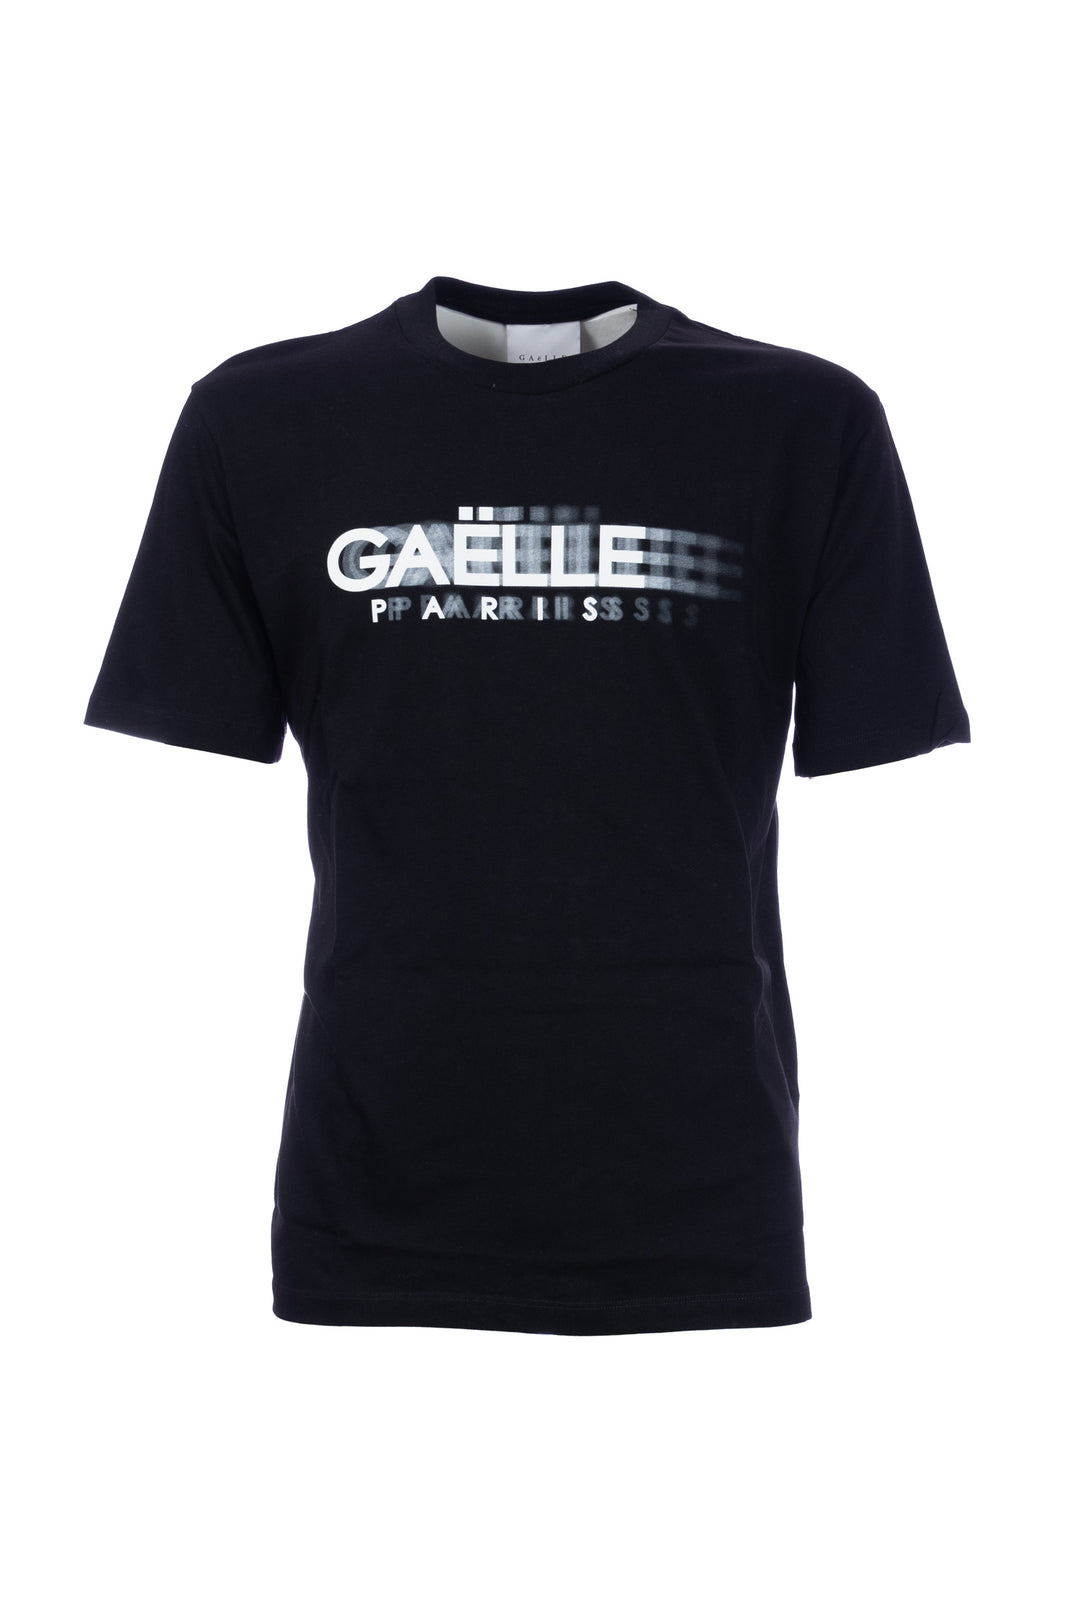 GAELLE T-shirt nera in cotone con stampa logo sfocato - Mancinelli 1954